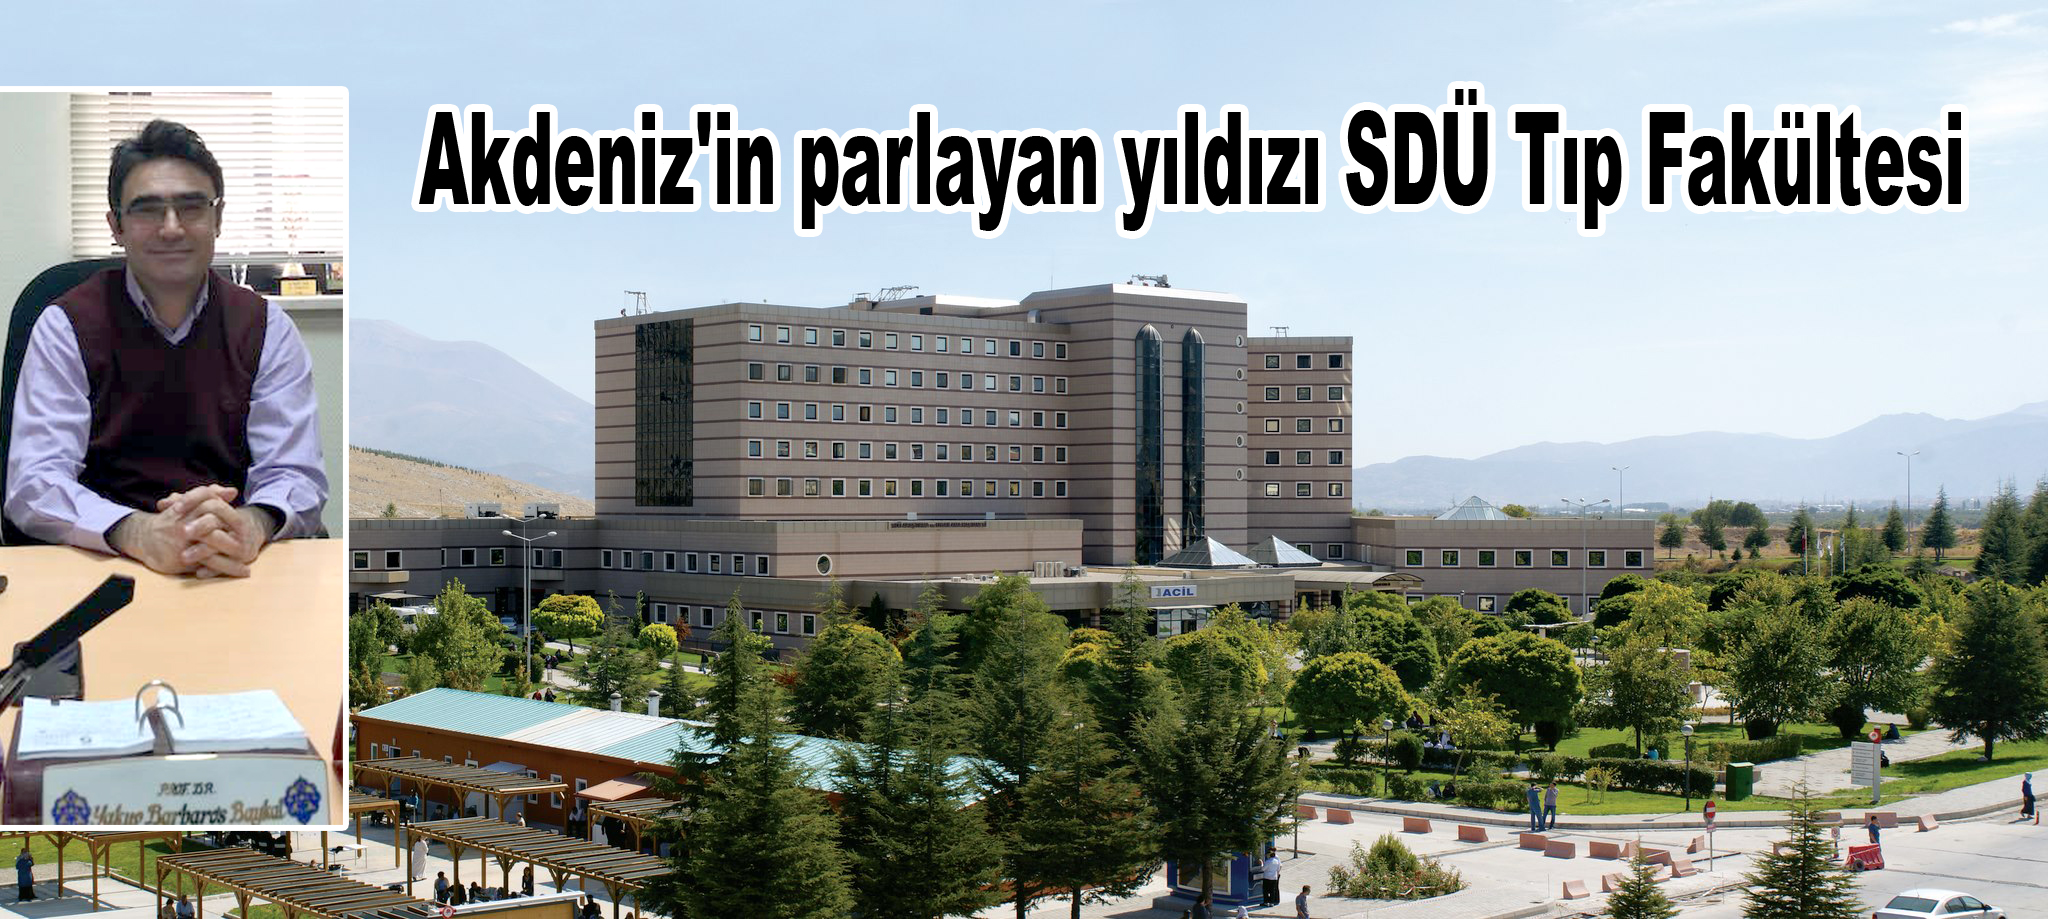 Akdeniz'in parlayan yıldızı SDÜ Tıp Fakültesi...